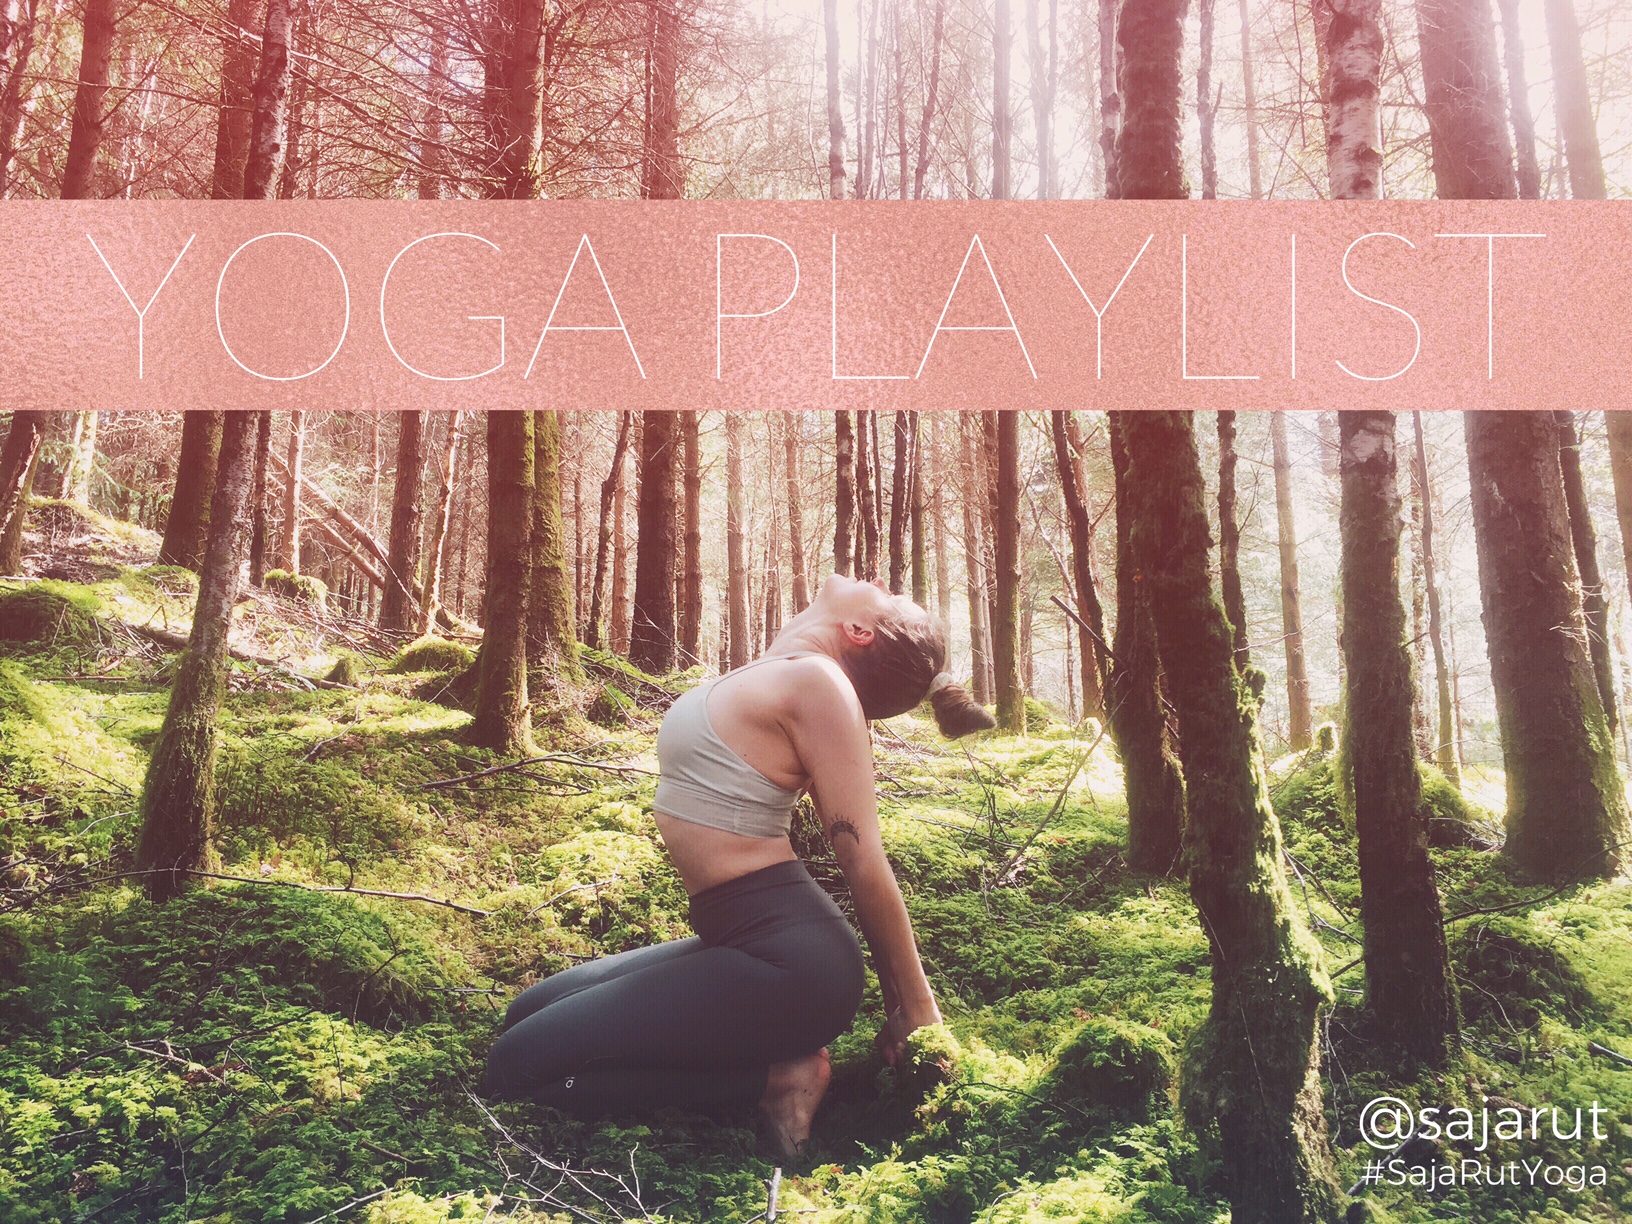 Yoga playlist image